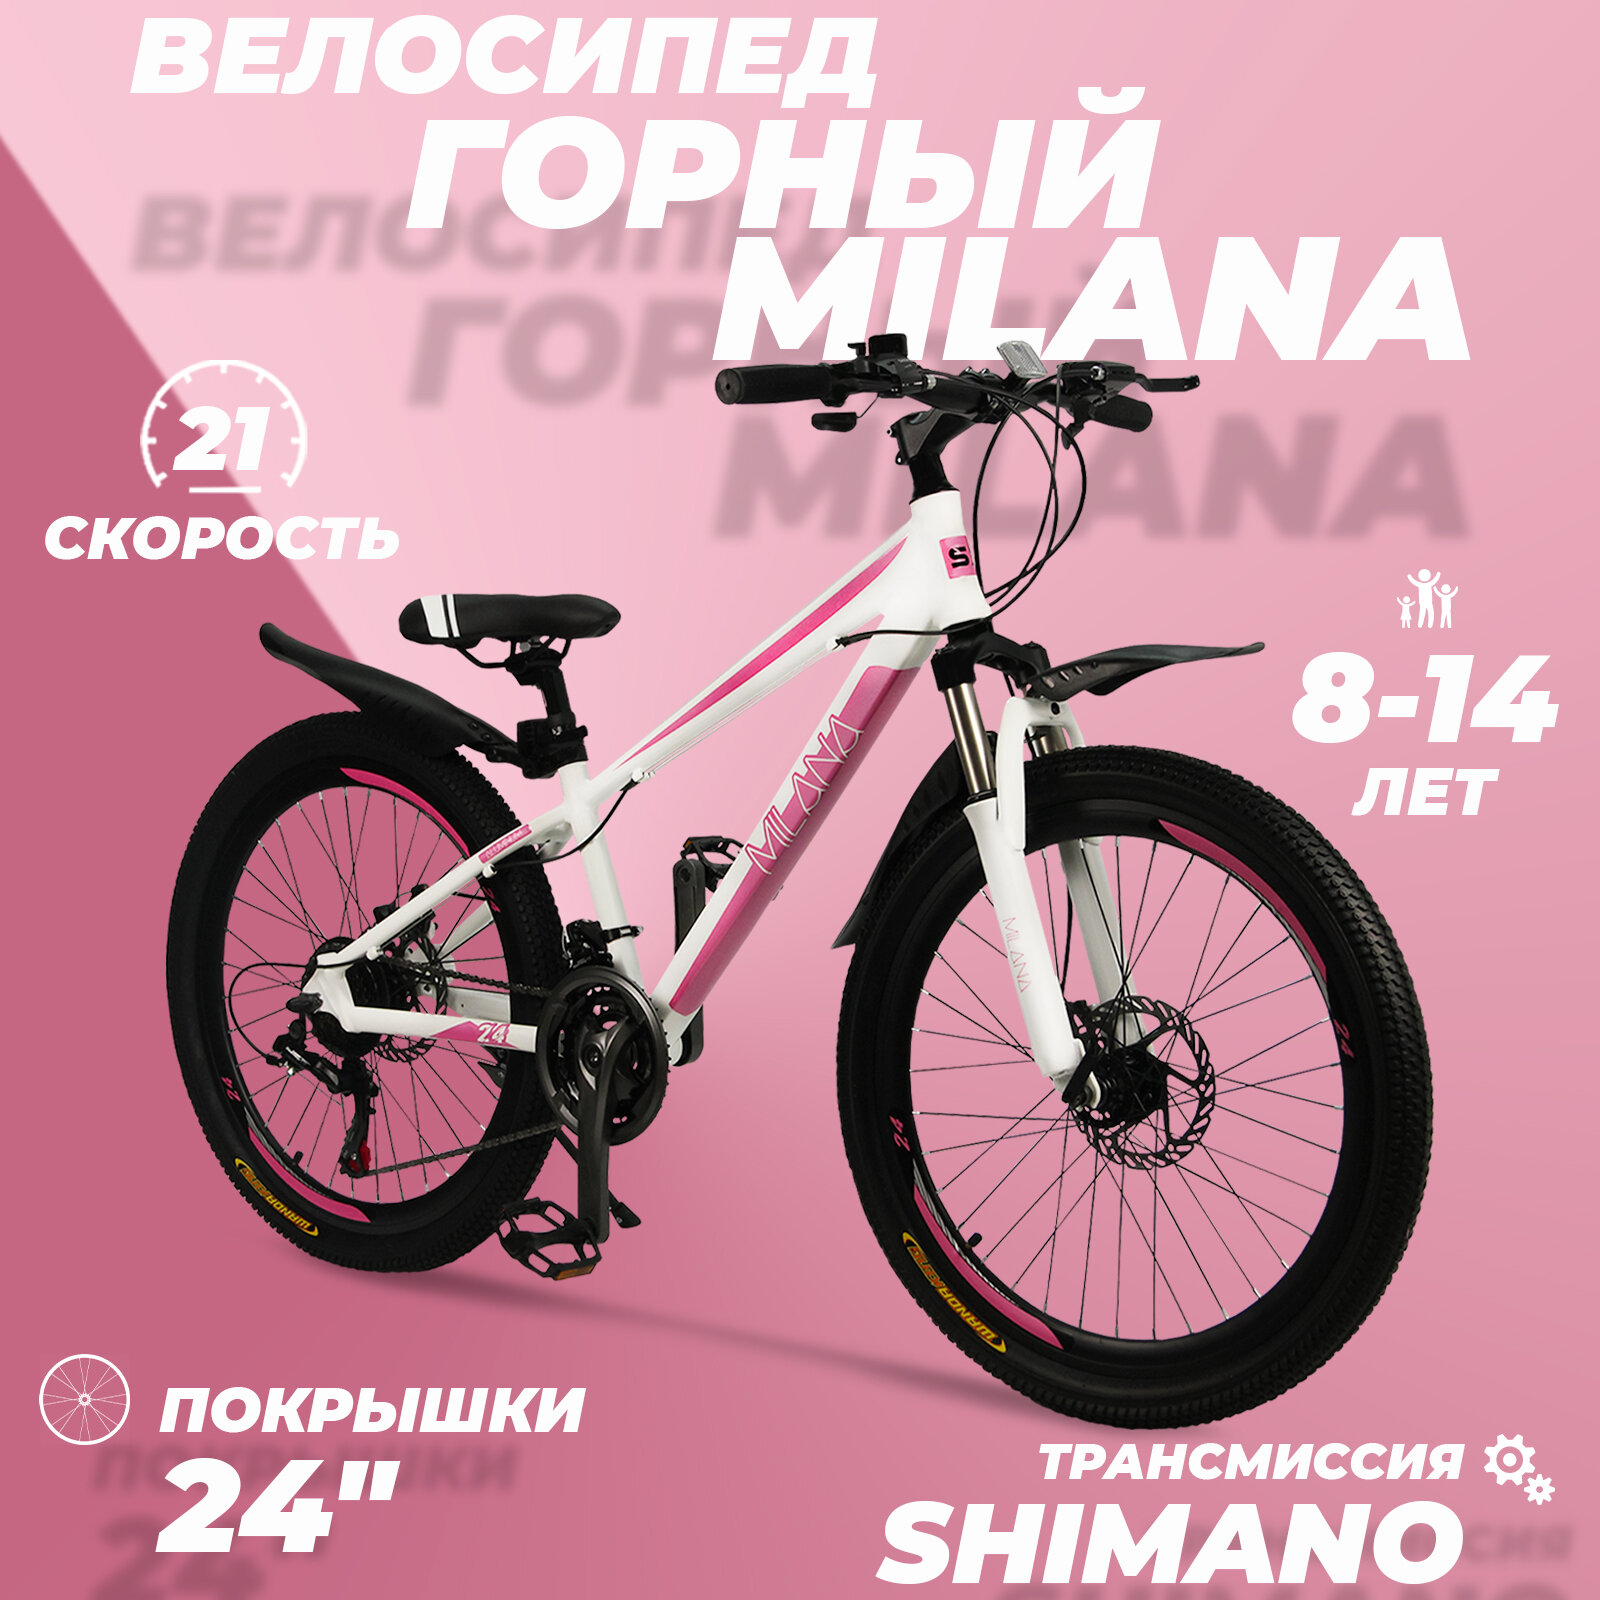 Горный велосипед детский скоростной Milana 24" белый, 8-14 лет, 21 скорость (Shimano tourney)